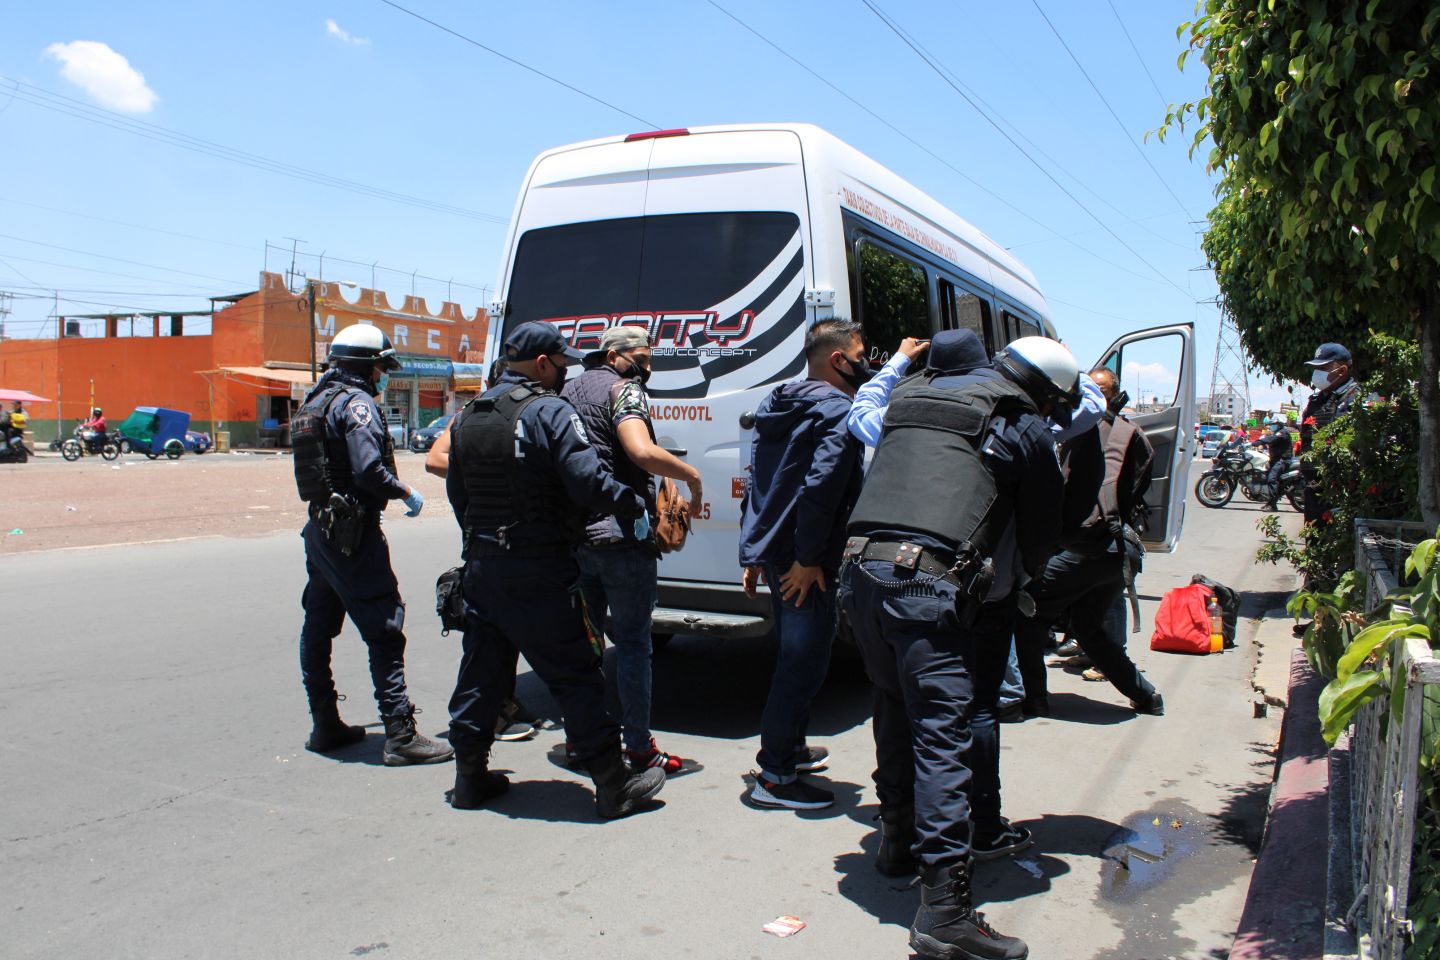 Para prevenir y combatir delitos la policía de Chimalhuacán implementa operativo Doble Muro